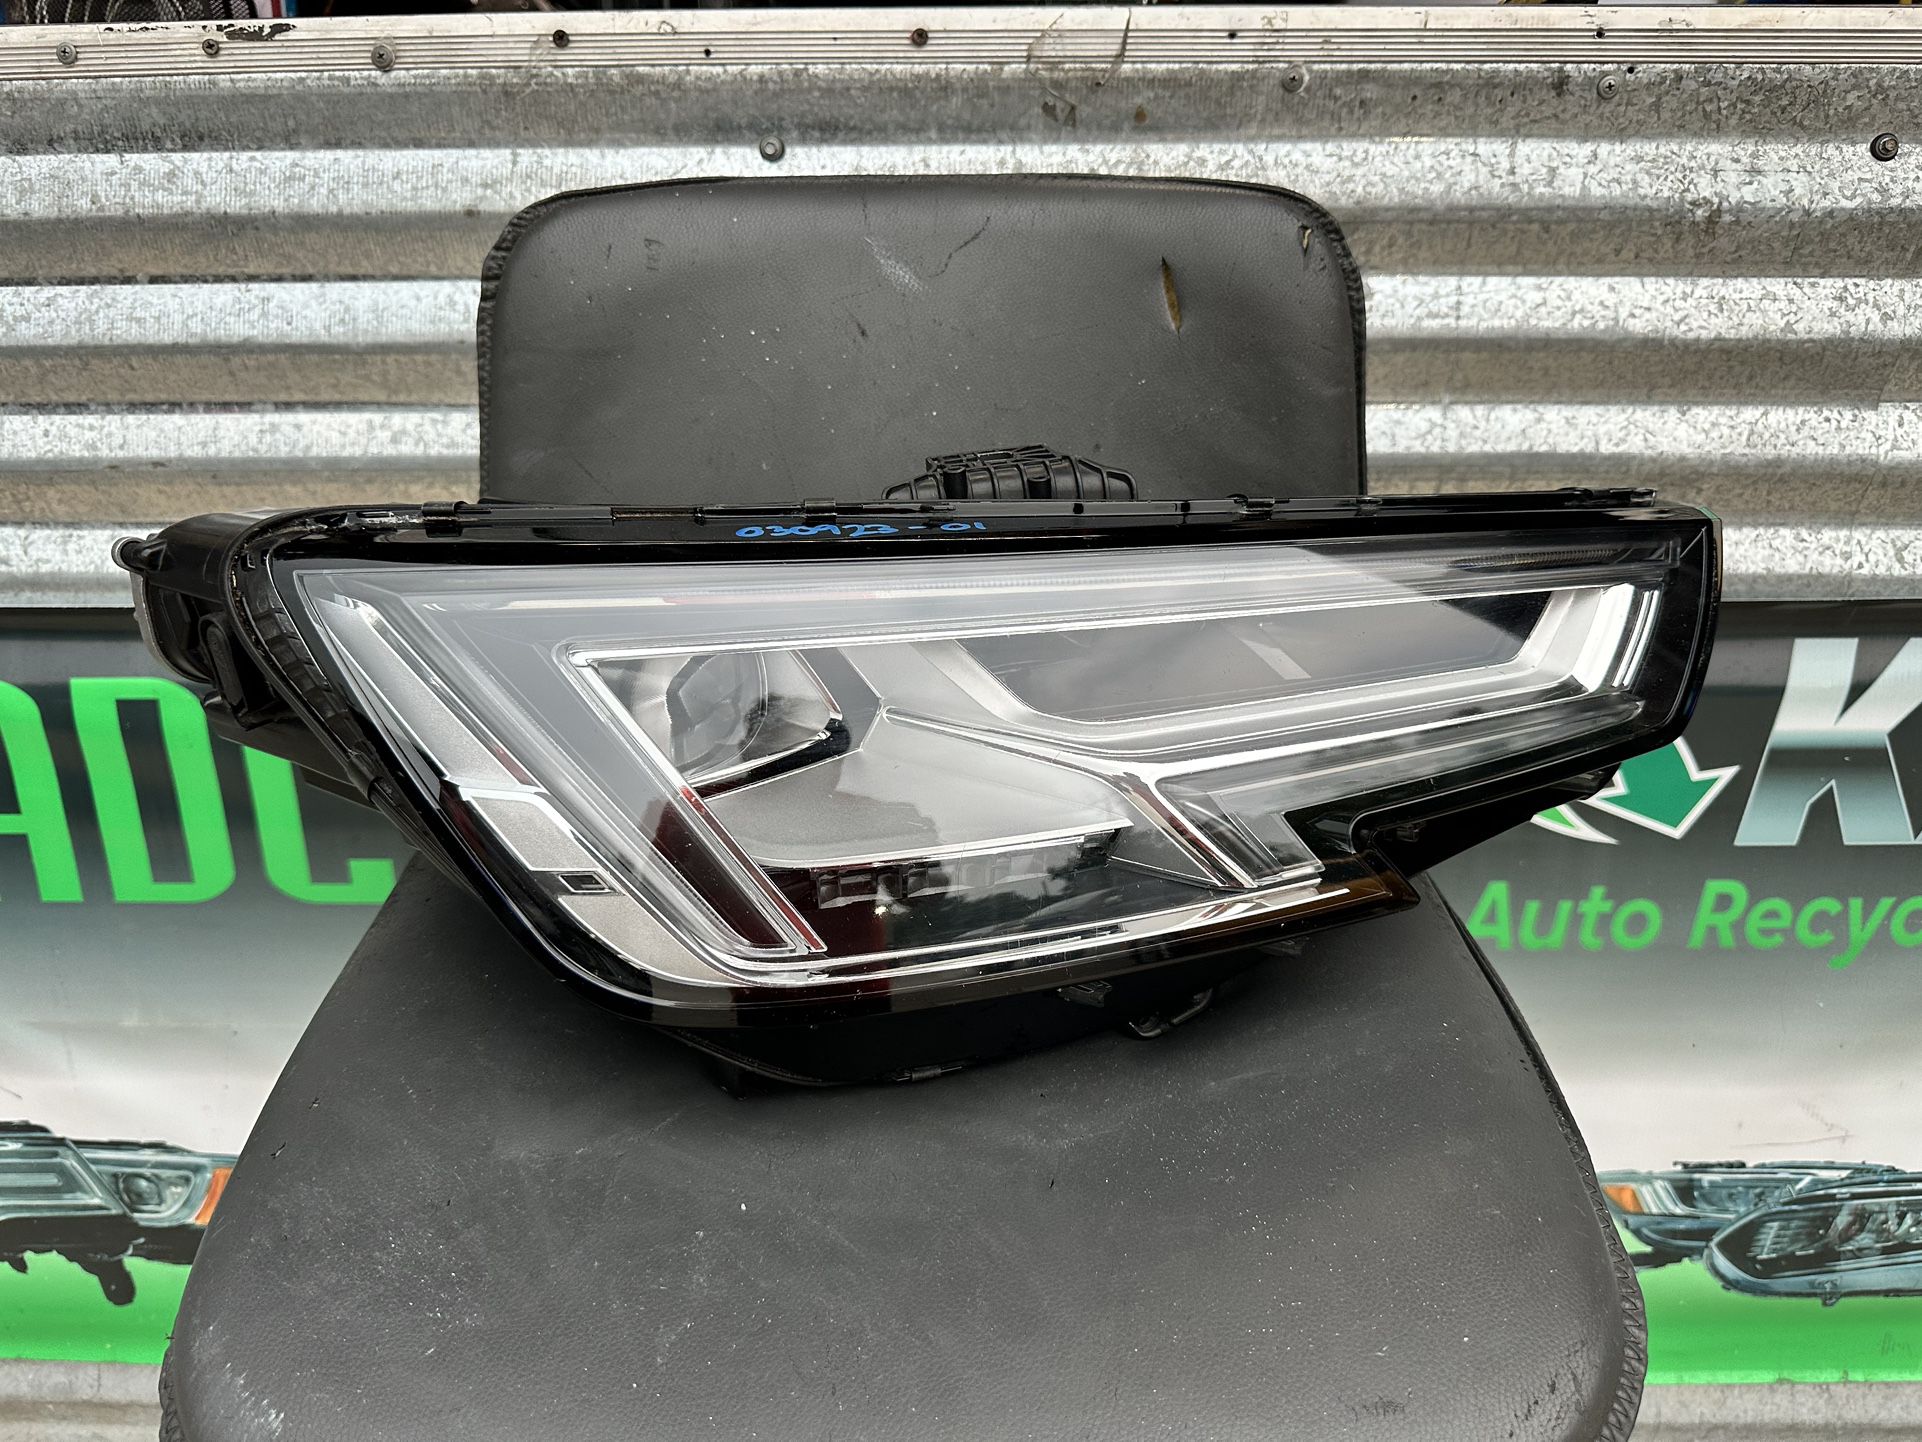 2017-2019 Audi A4 Passenger Full LED Headlight 